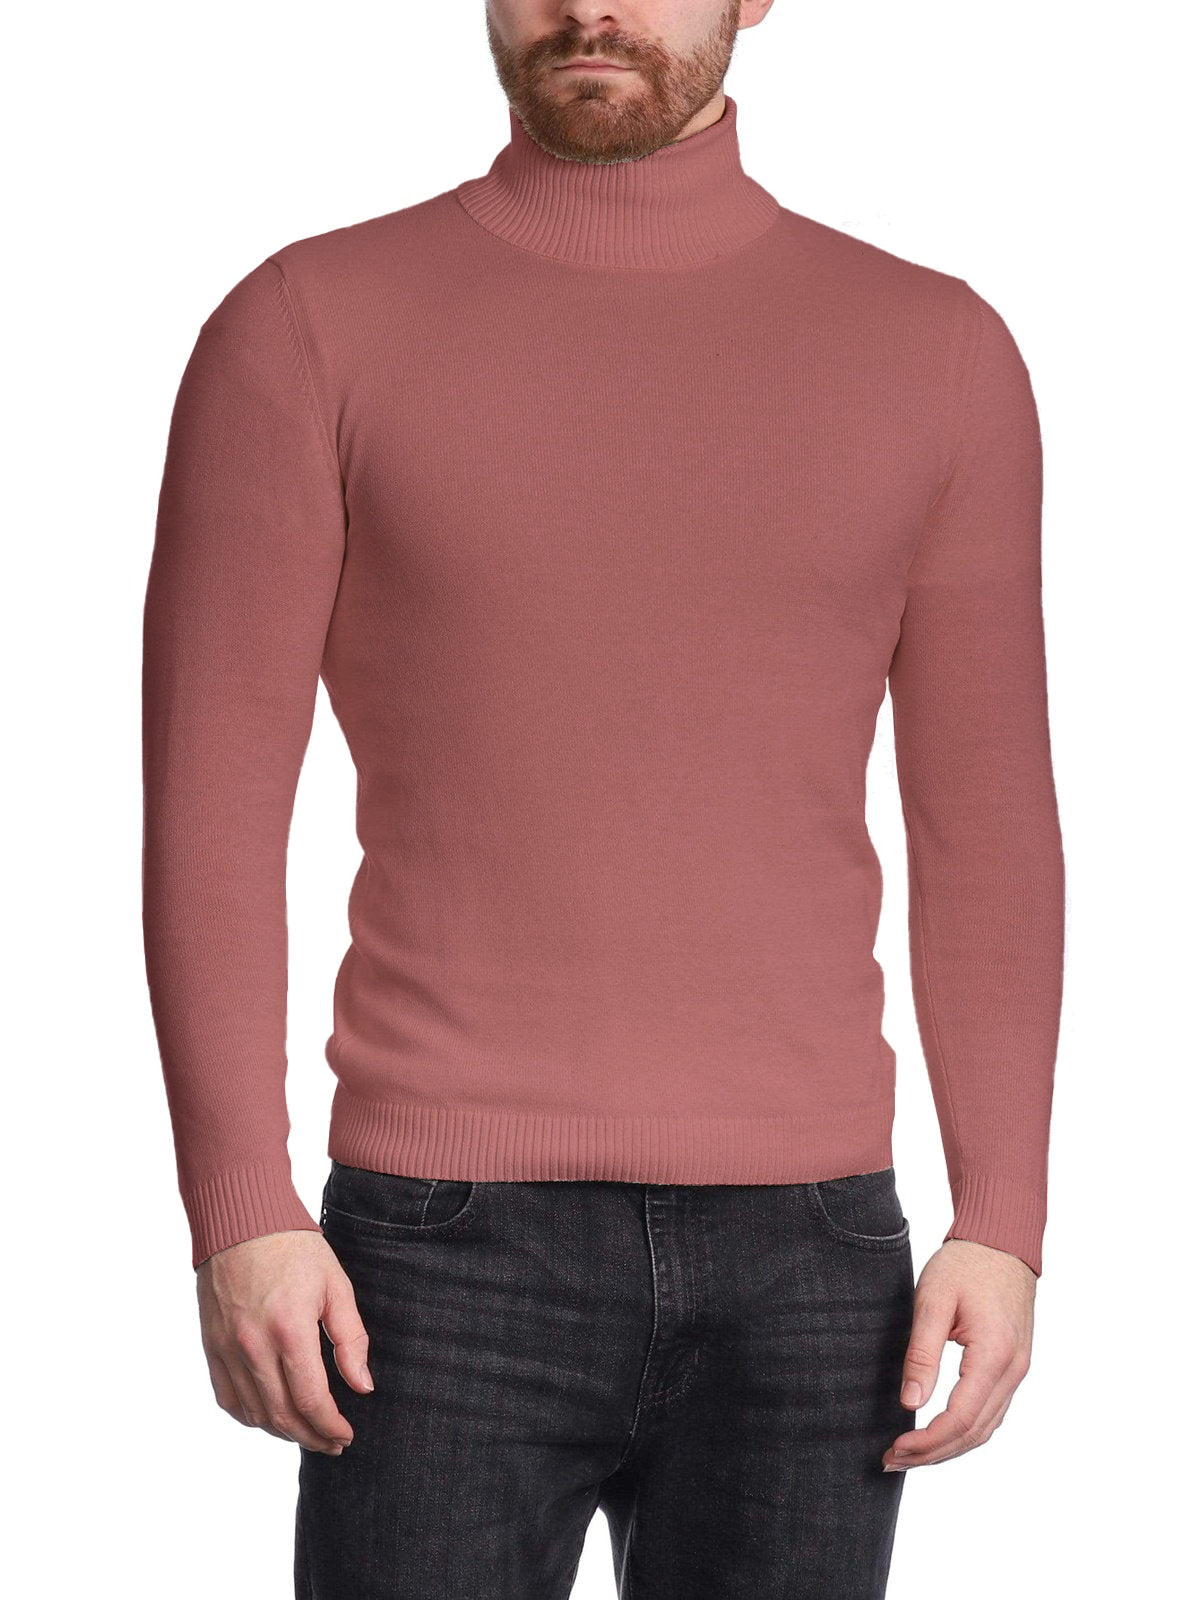 Arthur Black Men's Solid Pink Pullover Cotton Blend Turtleneck Sweater Shirt